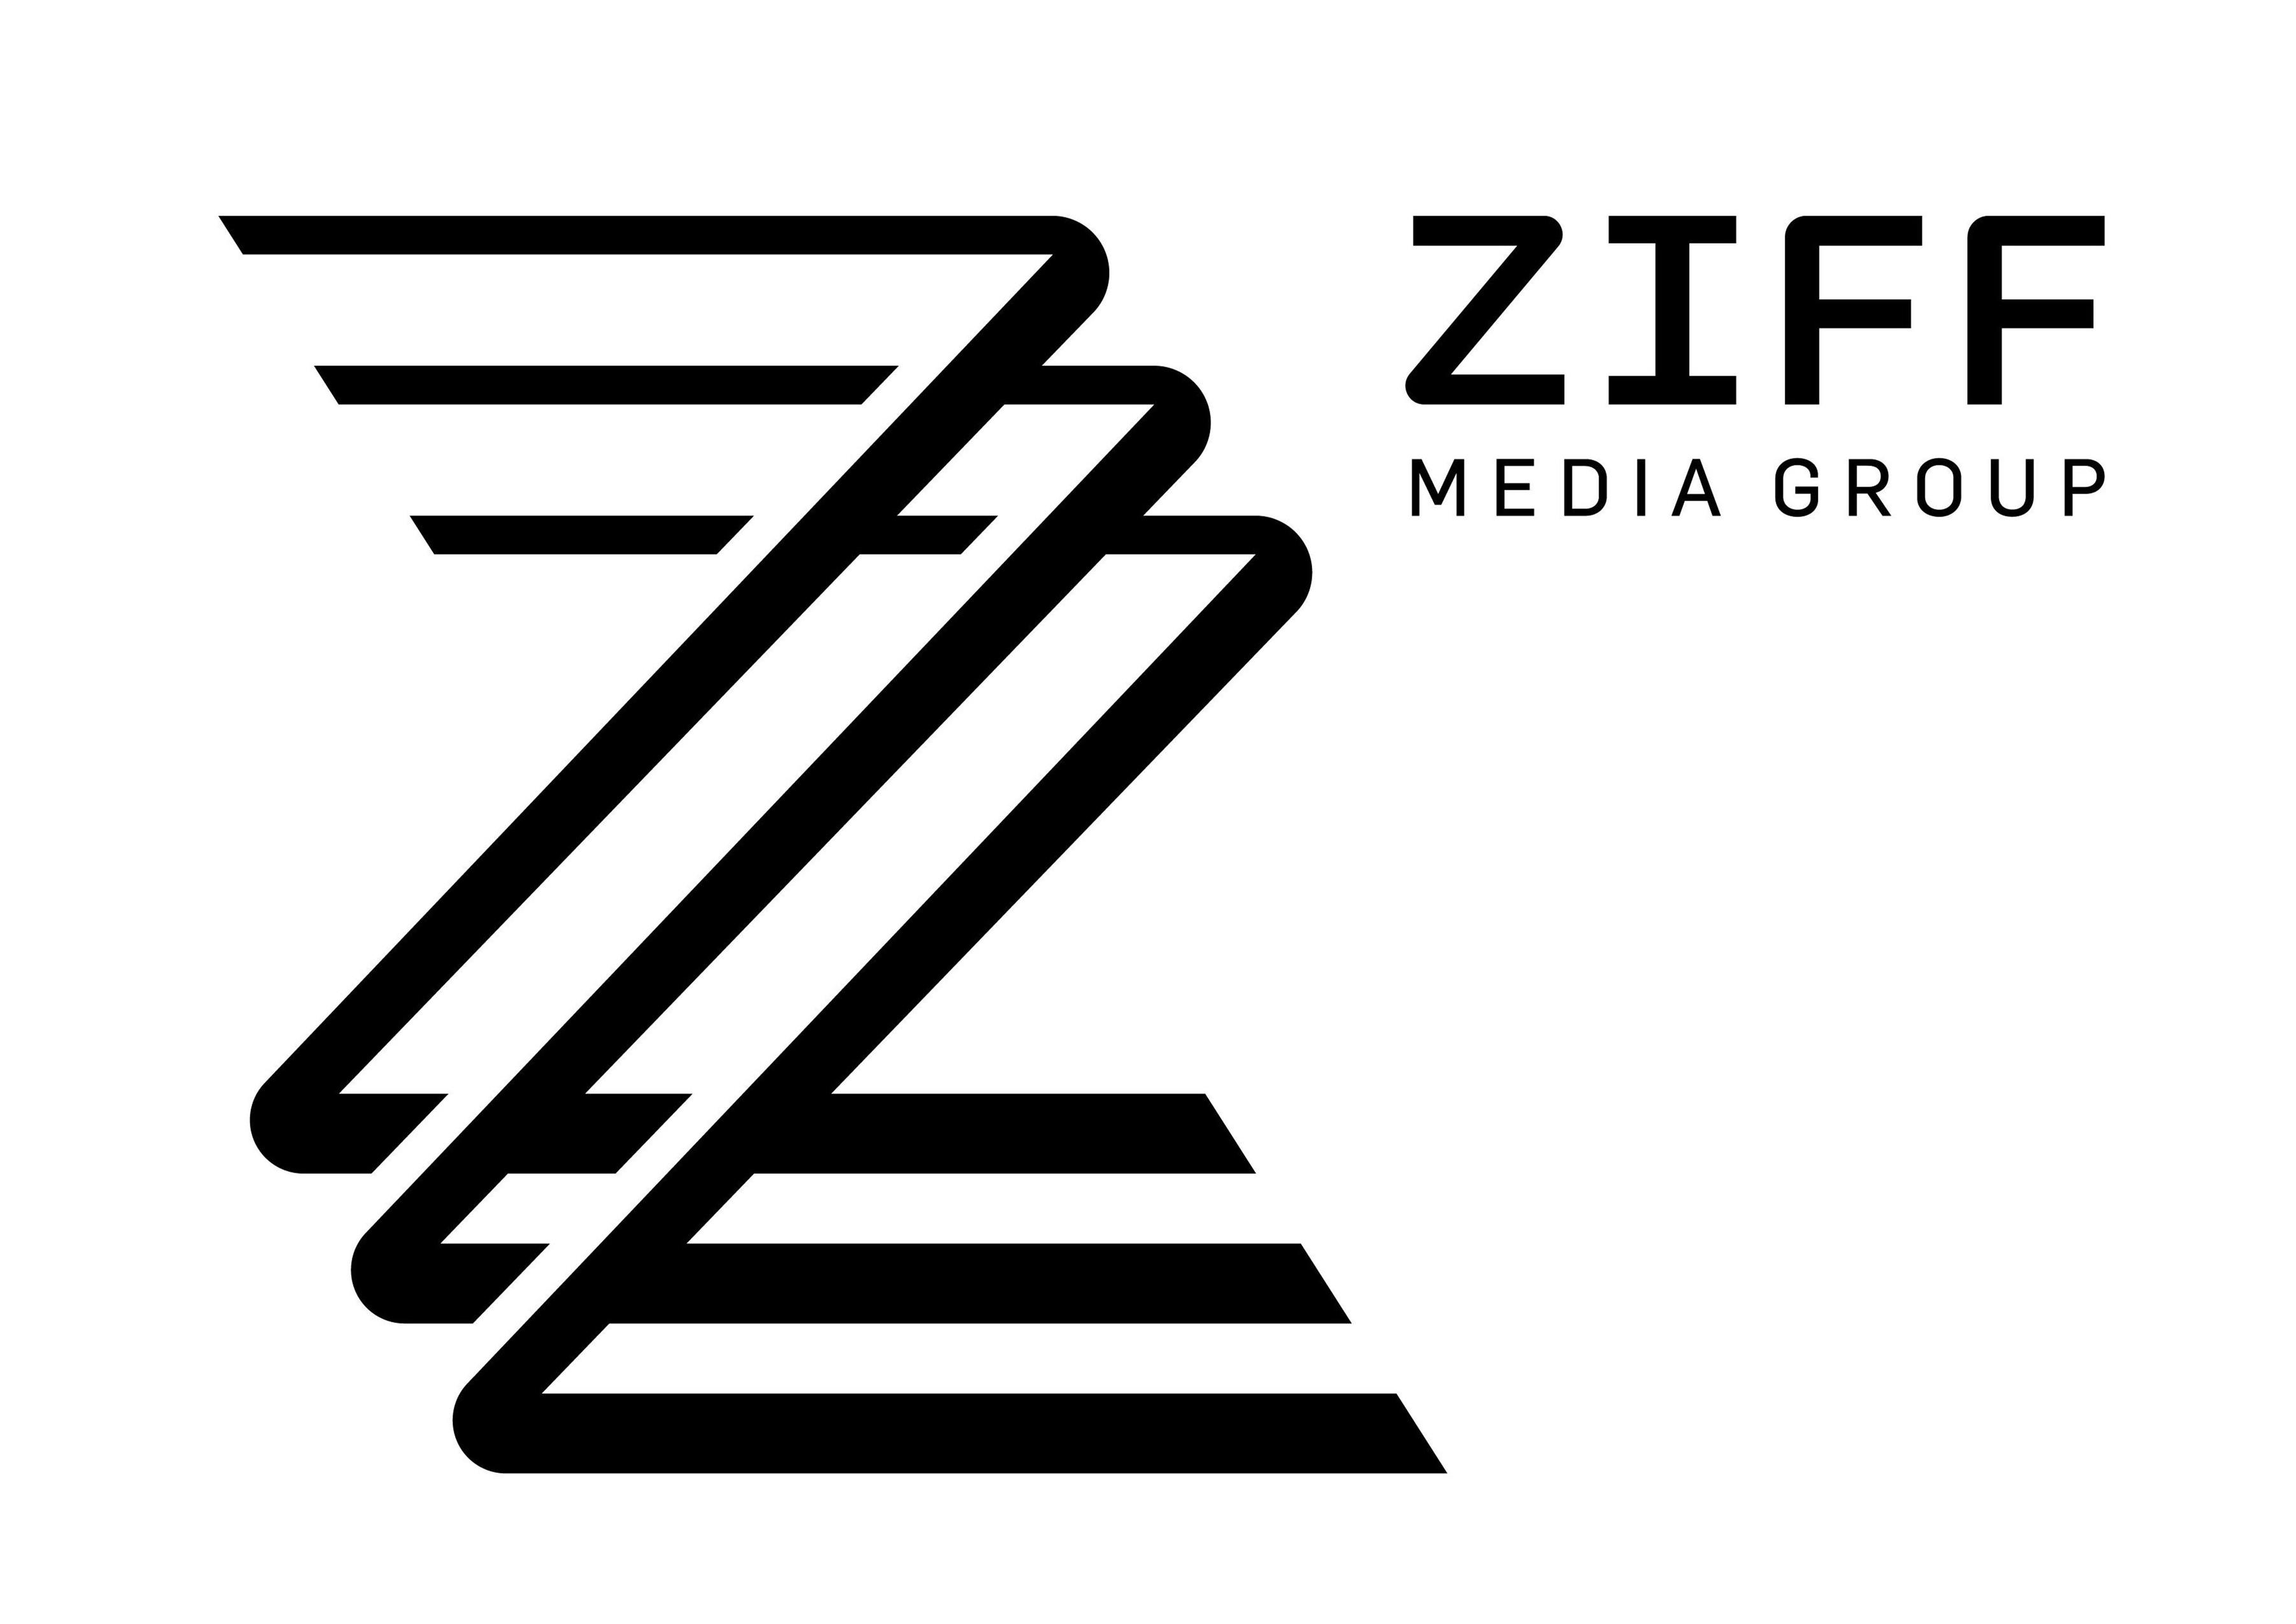 ZZZ ZIFF MEDIA GROUP